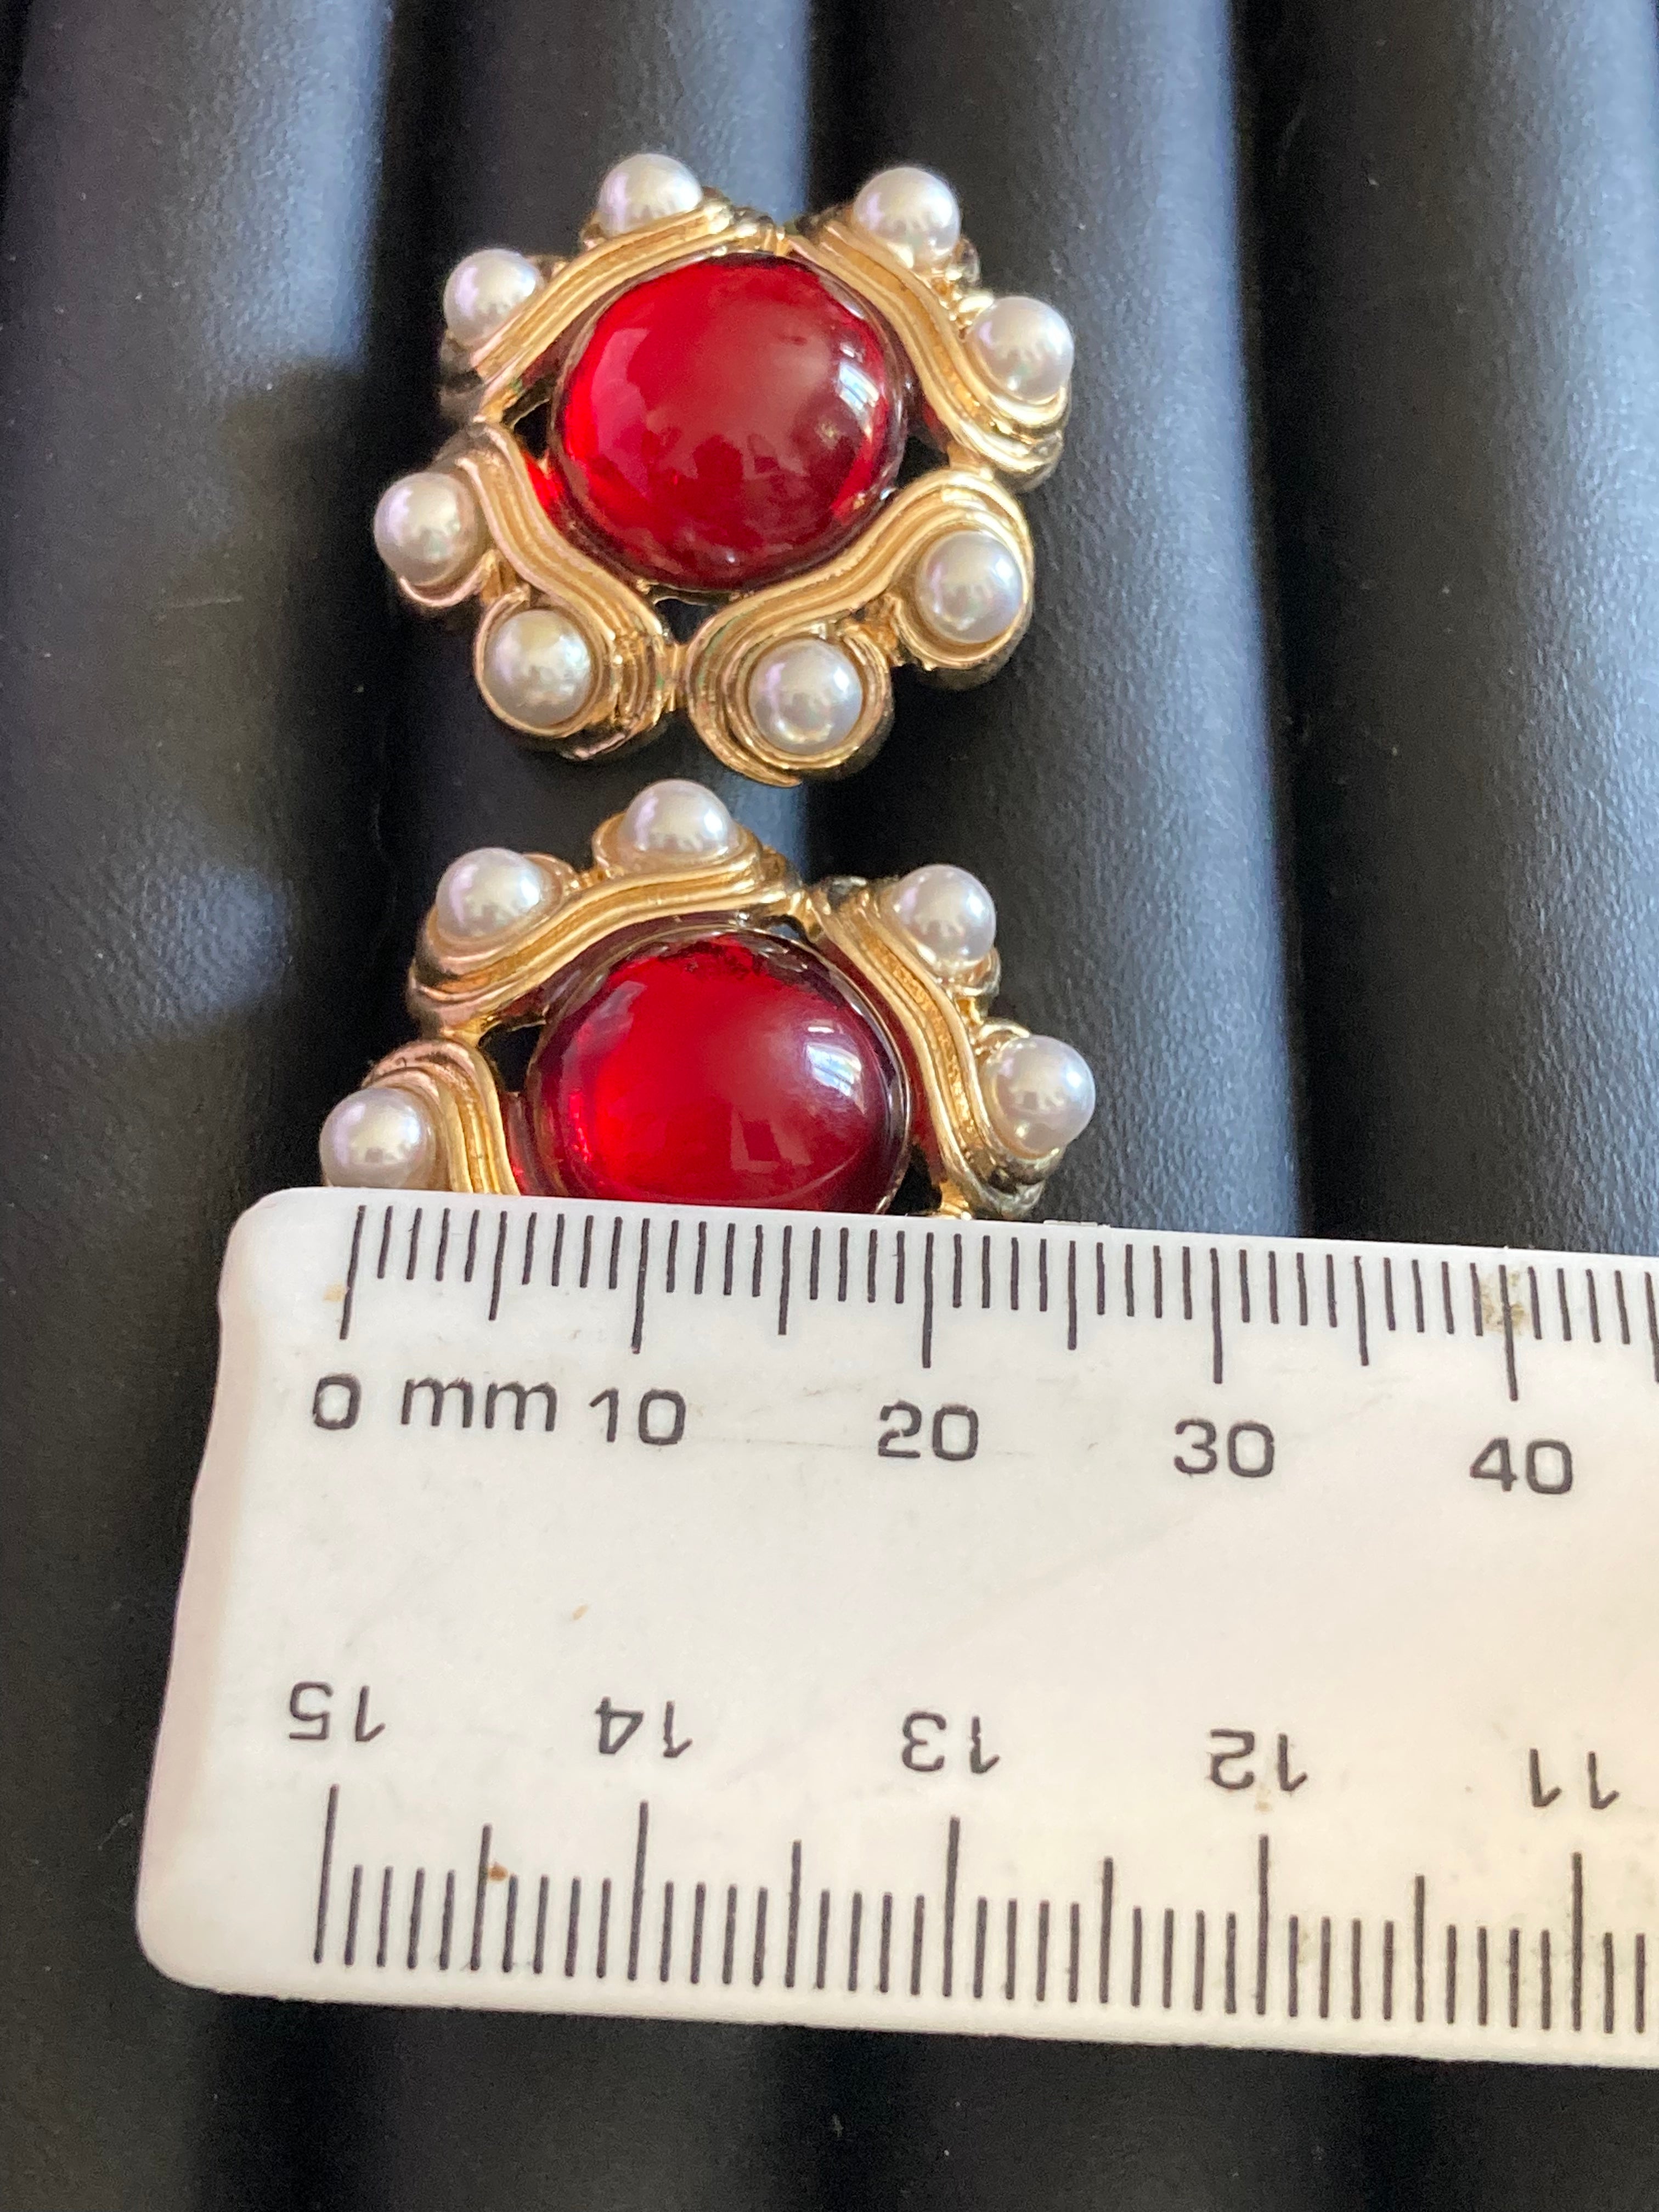 Daily Wear Dangler Design Red and White Stone Earrings ER1007